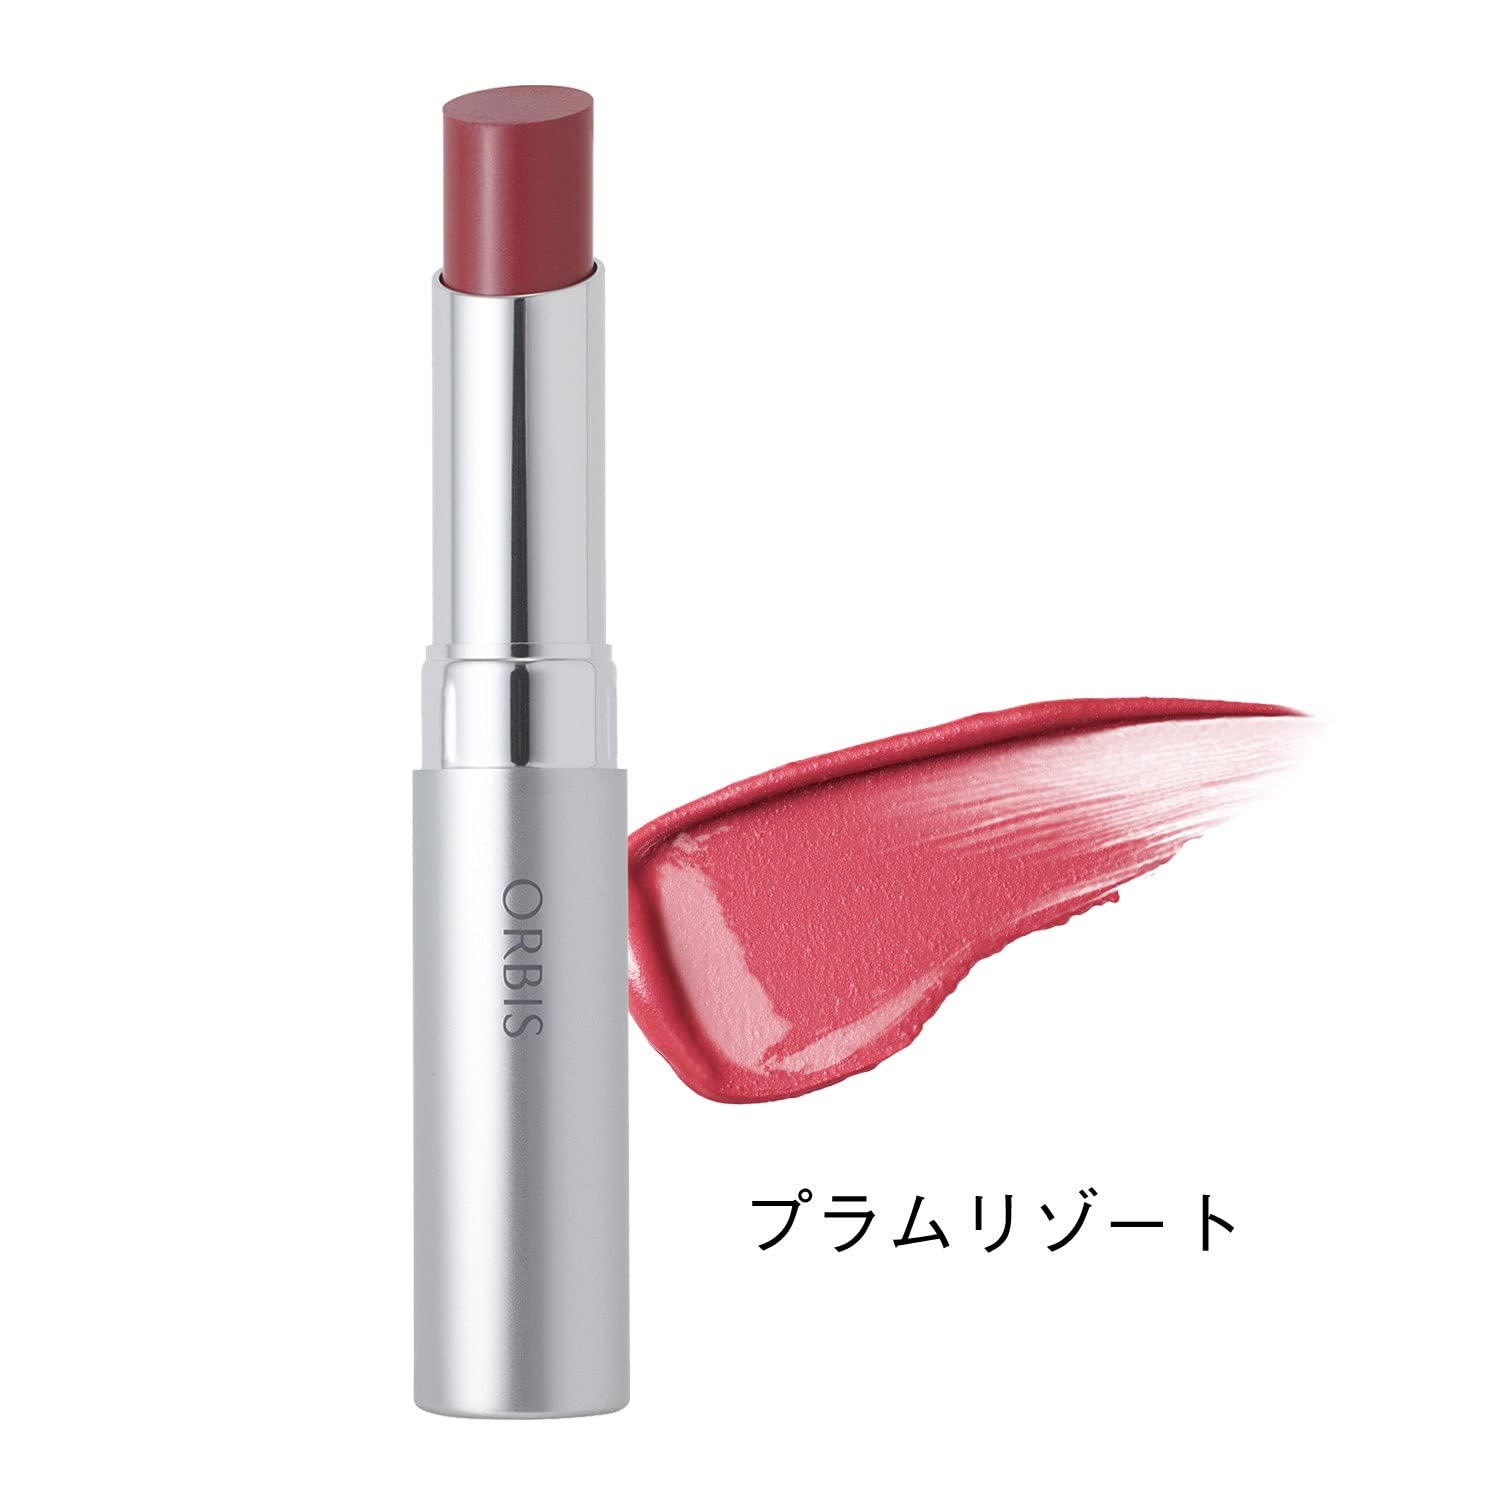 Isehan Kiss Me Ferme Red Brush Liquid Rouge 08 1.9g - Shea Butter Lipsticks